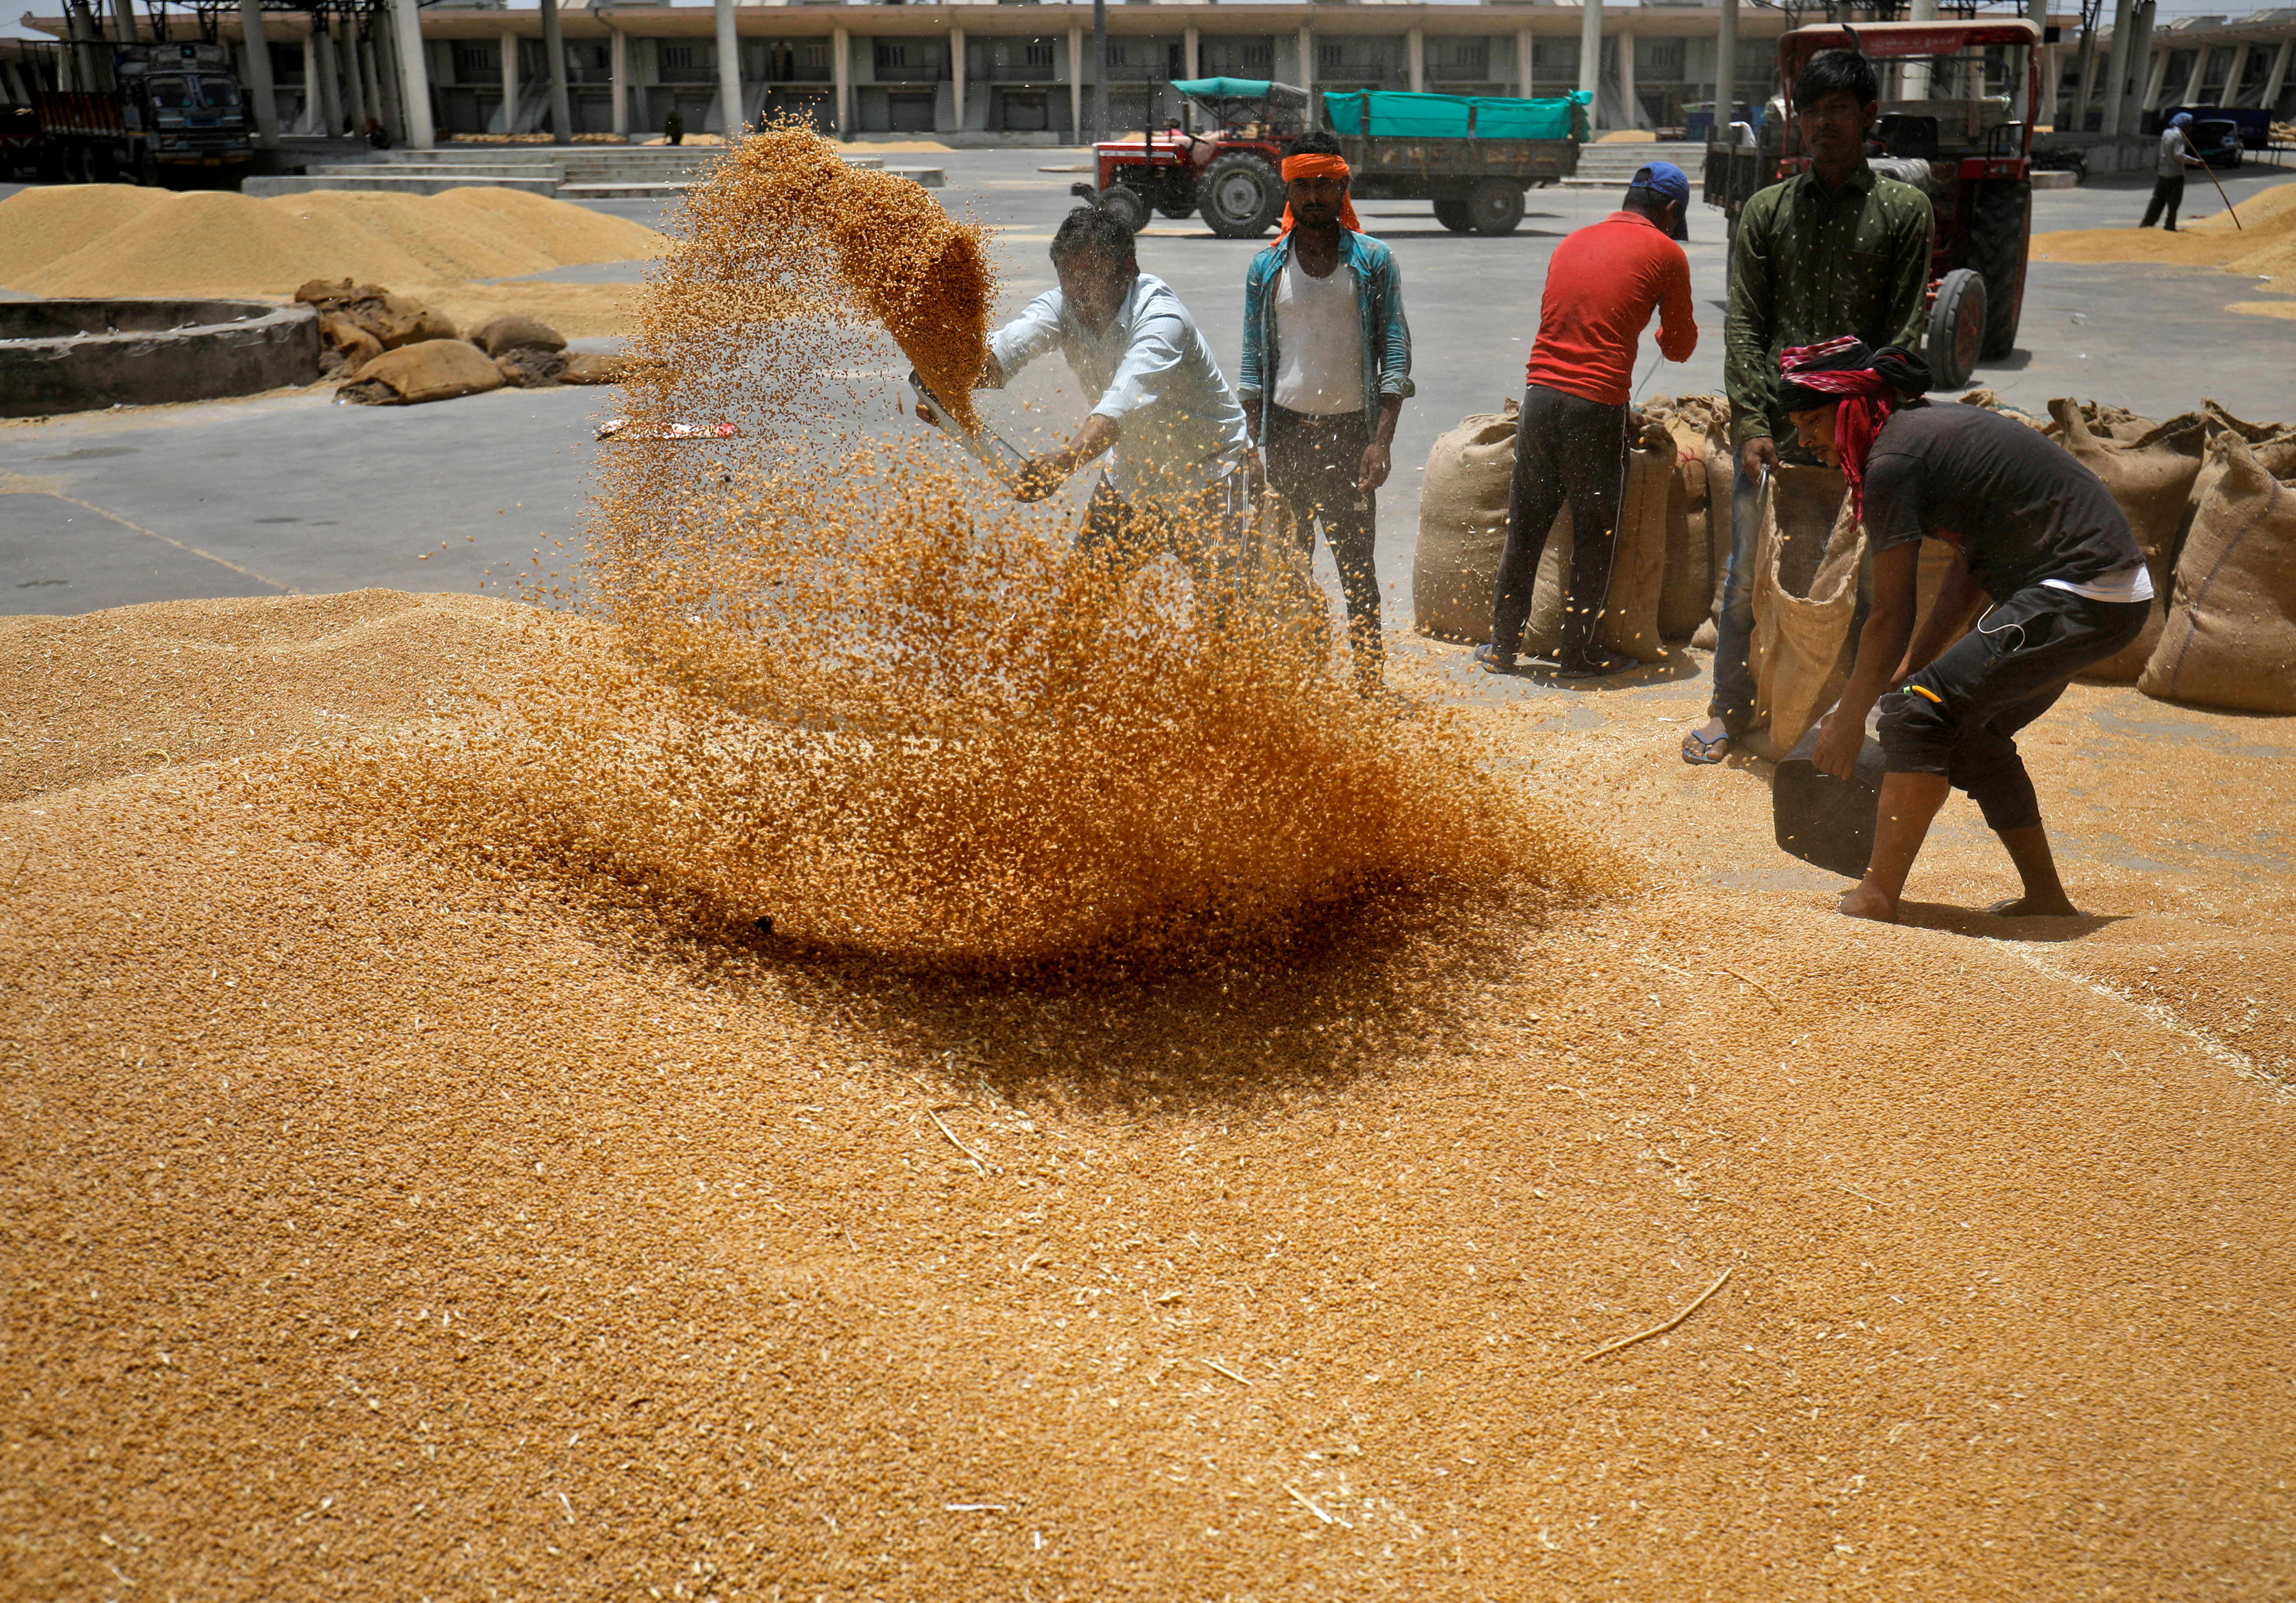 Los trabajadores tamizan el trigo antes de llenar los sacos en un mercado en las afueras de Ahmedabad.